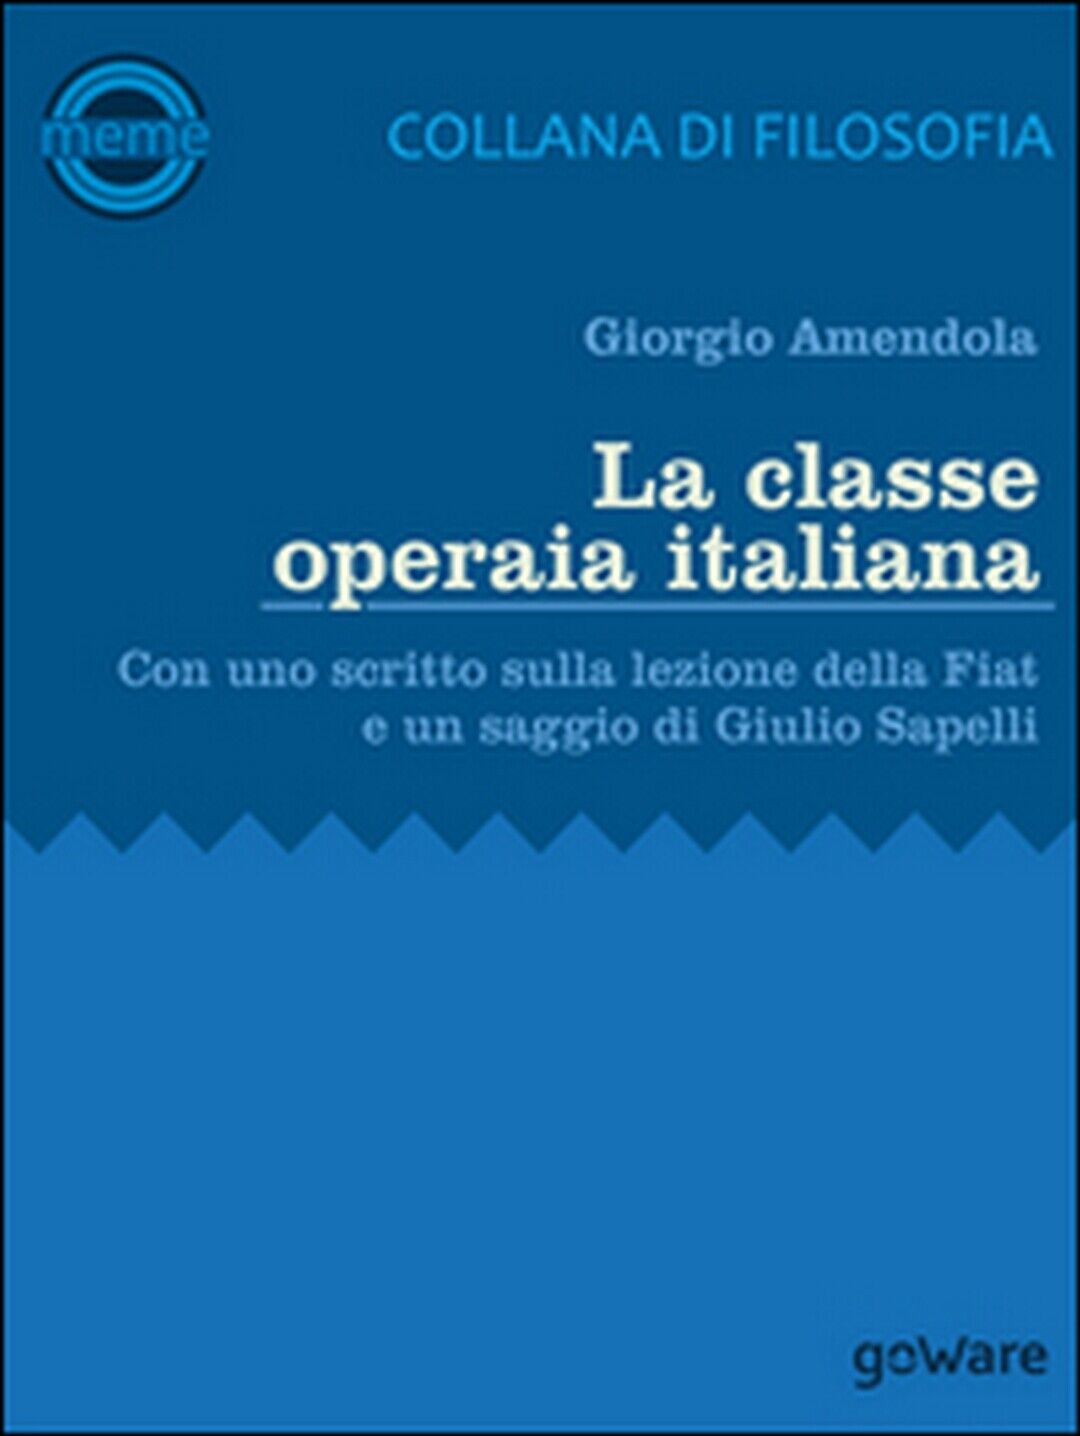 La classe operaia italiana, Giorgio Amendola,  2016,  Goware